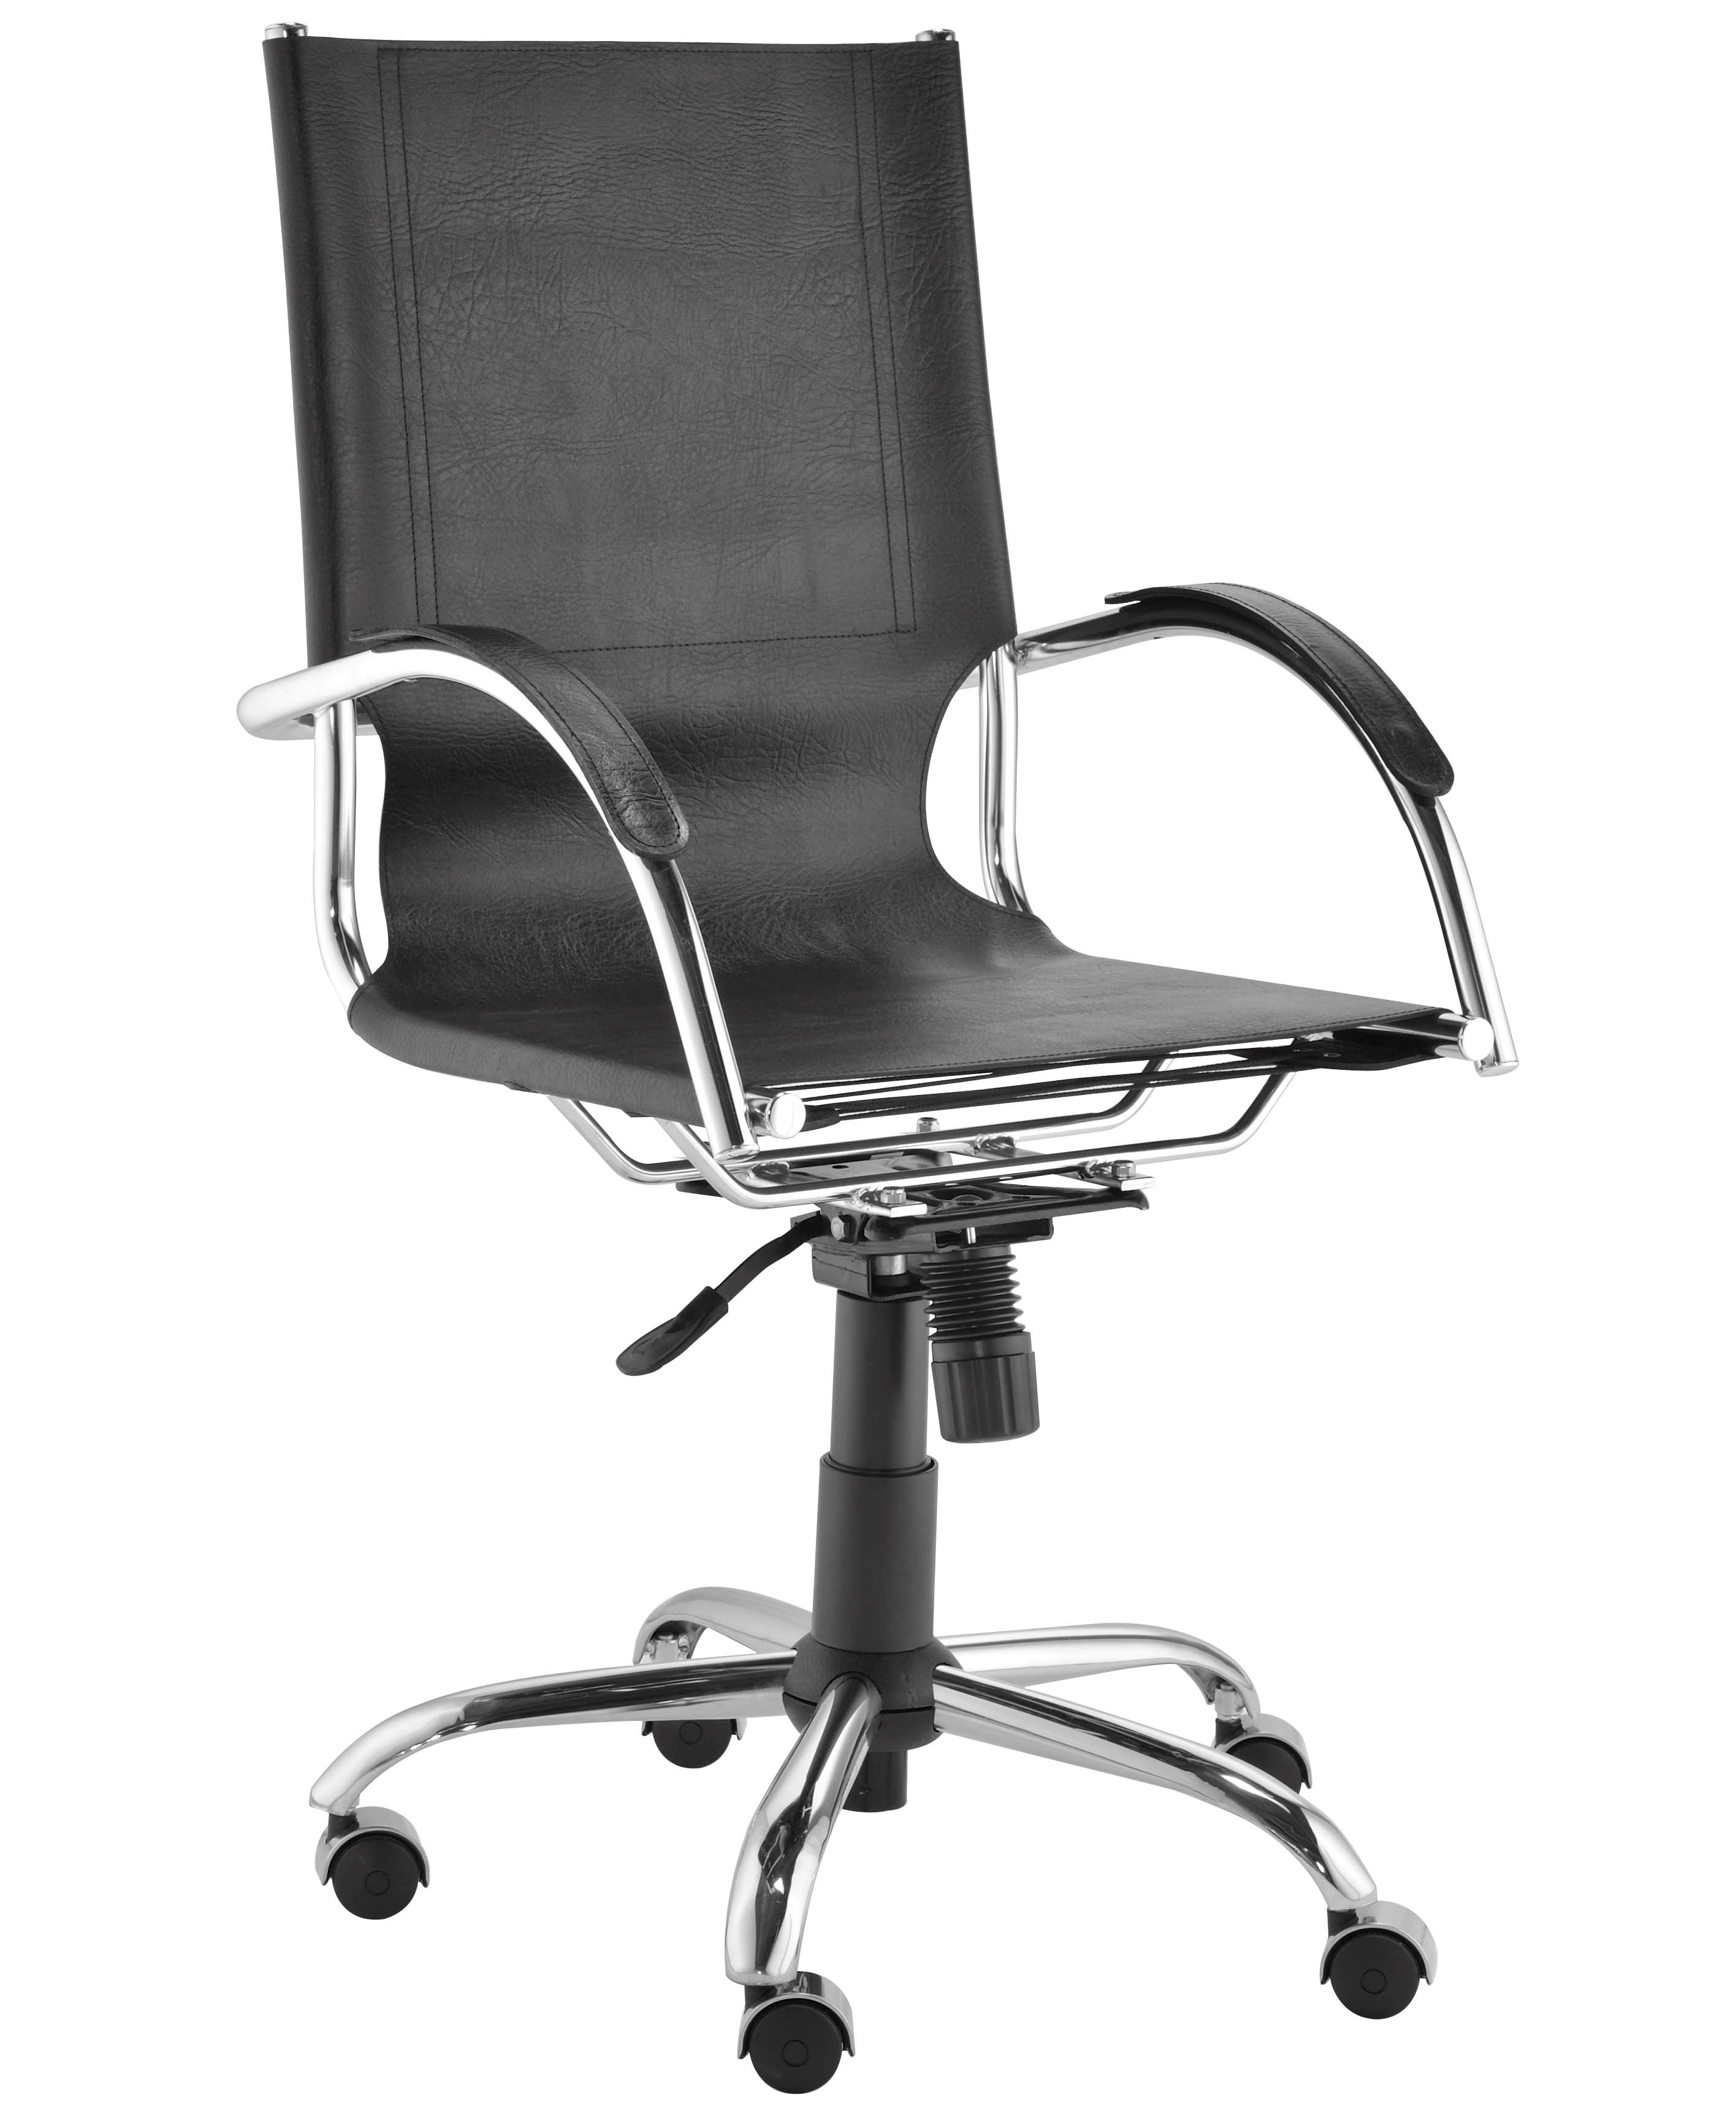  Cadeira Presidente Ideale Giratória C/ Relax - Couro 100% Natural 